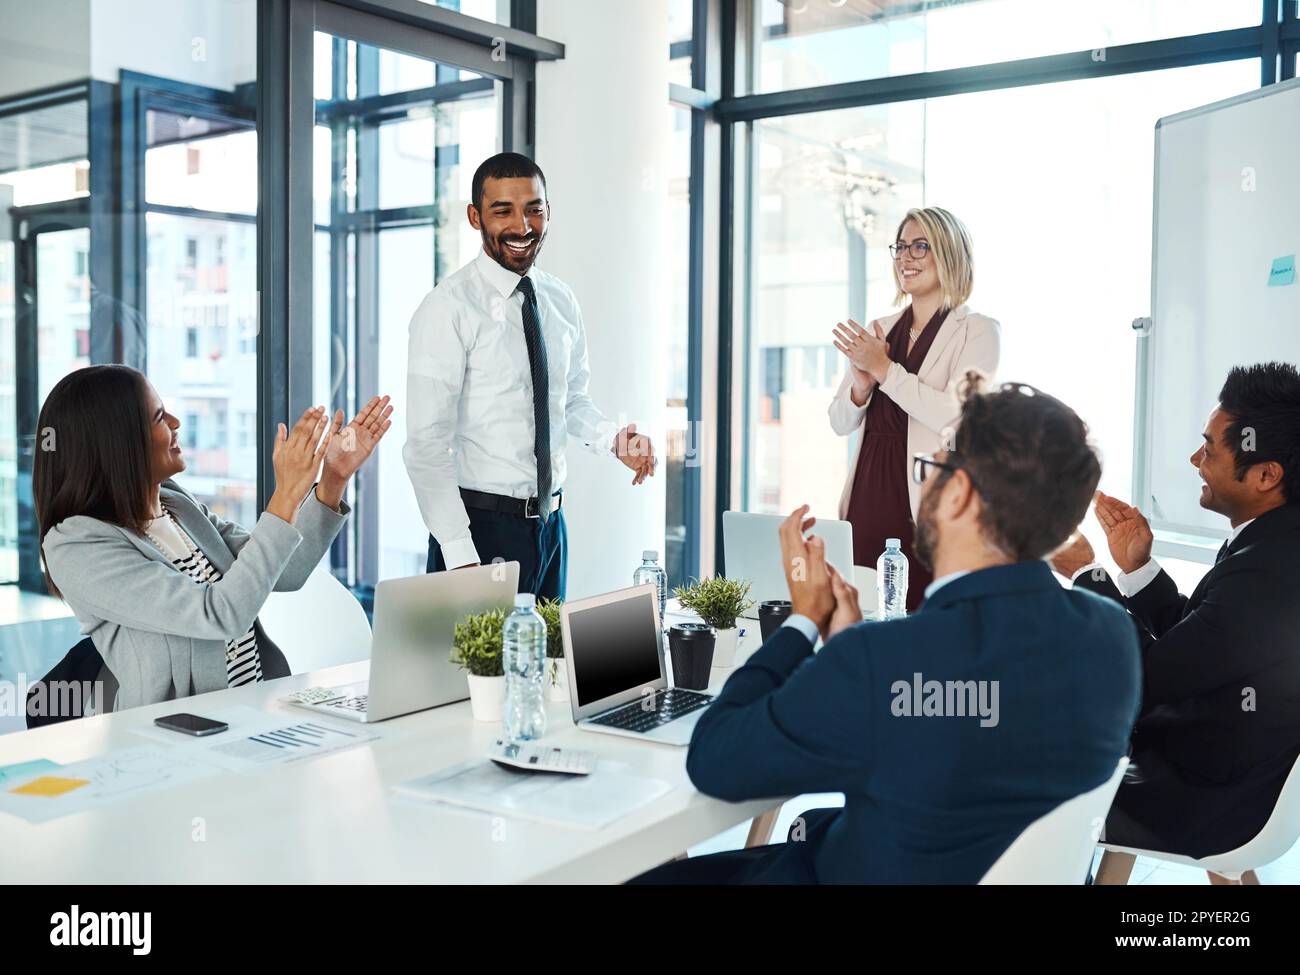 Er hat sich dem Team wieder einmal bewiesen. Geschäftsleute applaudieren einem Kollegen in einem Büro. Stockfoto